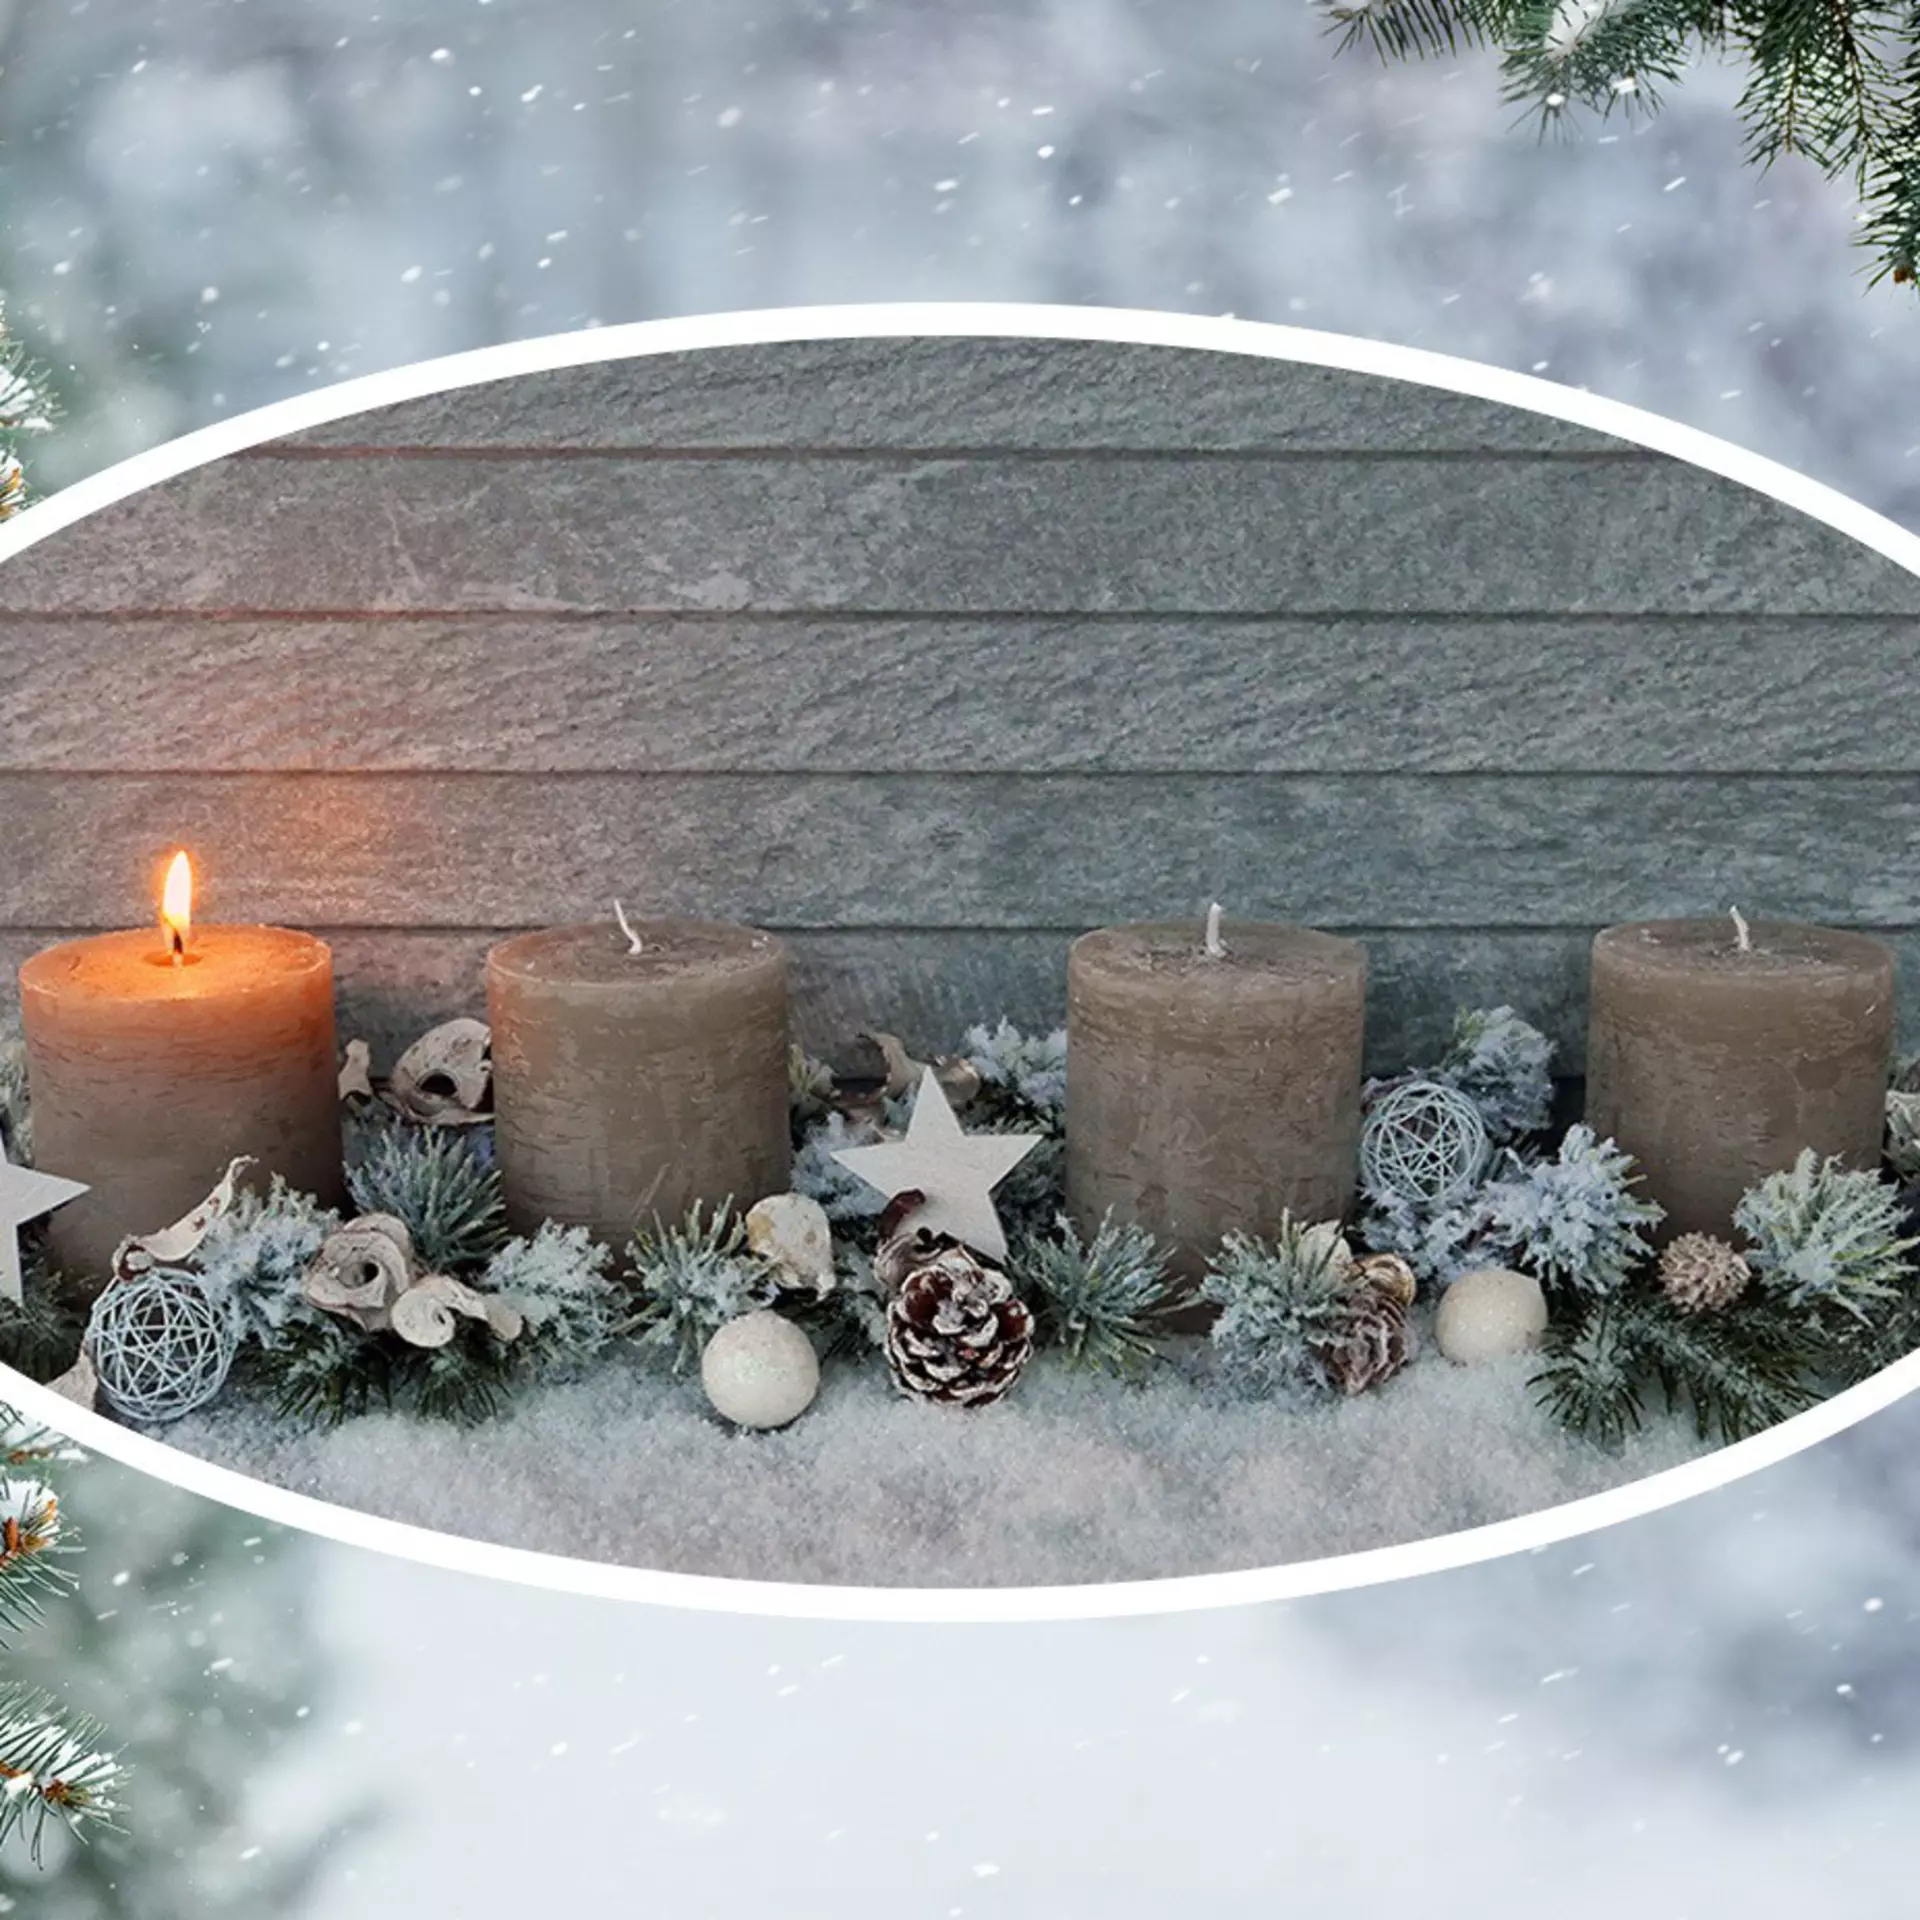 Genießen Sie die besinnliche Weihnachtszeit mit der vielfältigen Auswahl an Weihnachtsartikeln von Möbel Inhofer!